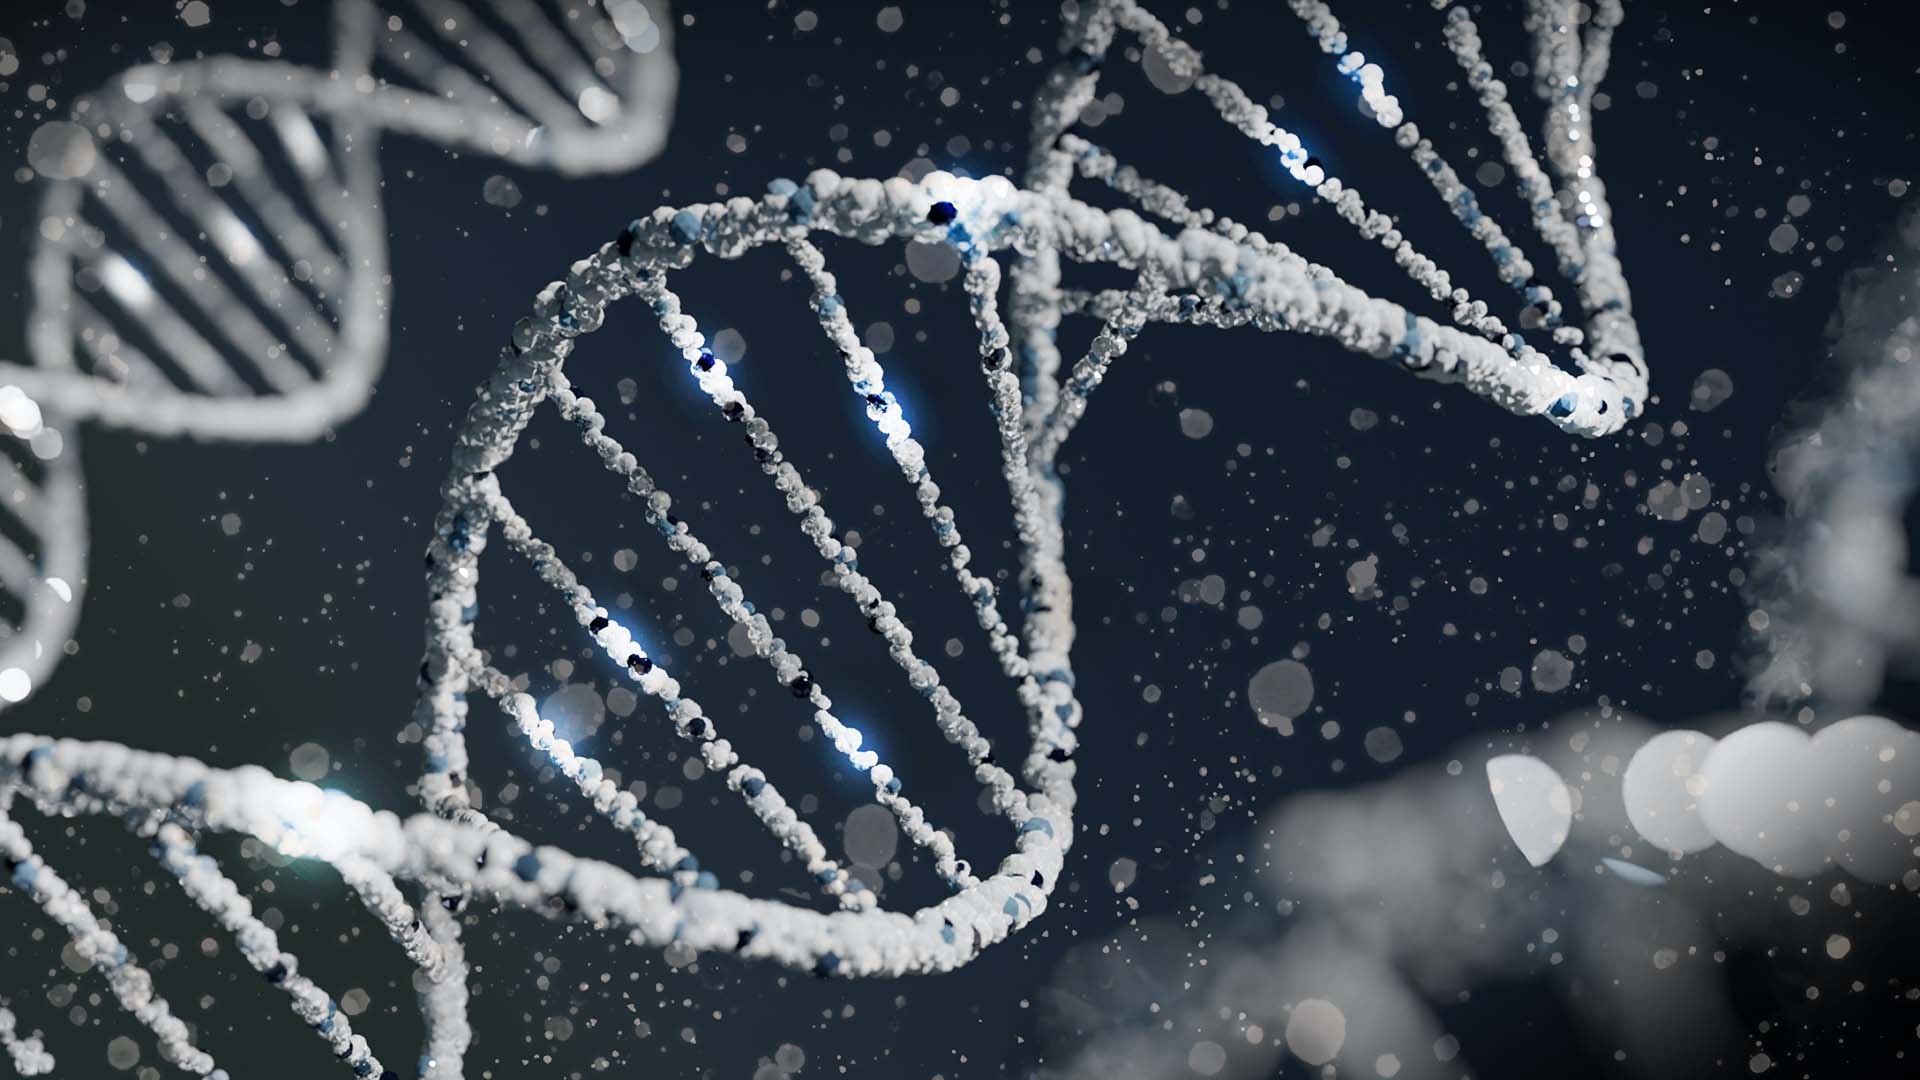 Computer rendering of DNA. Image credit: Sangharsh Lohakare (@sangharsh_l) on Unsplash.